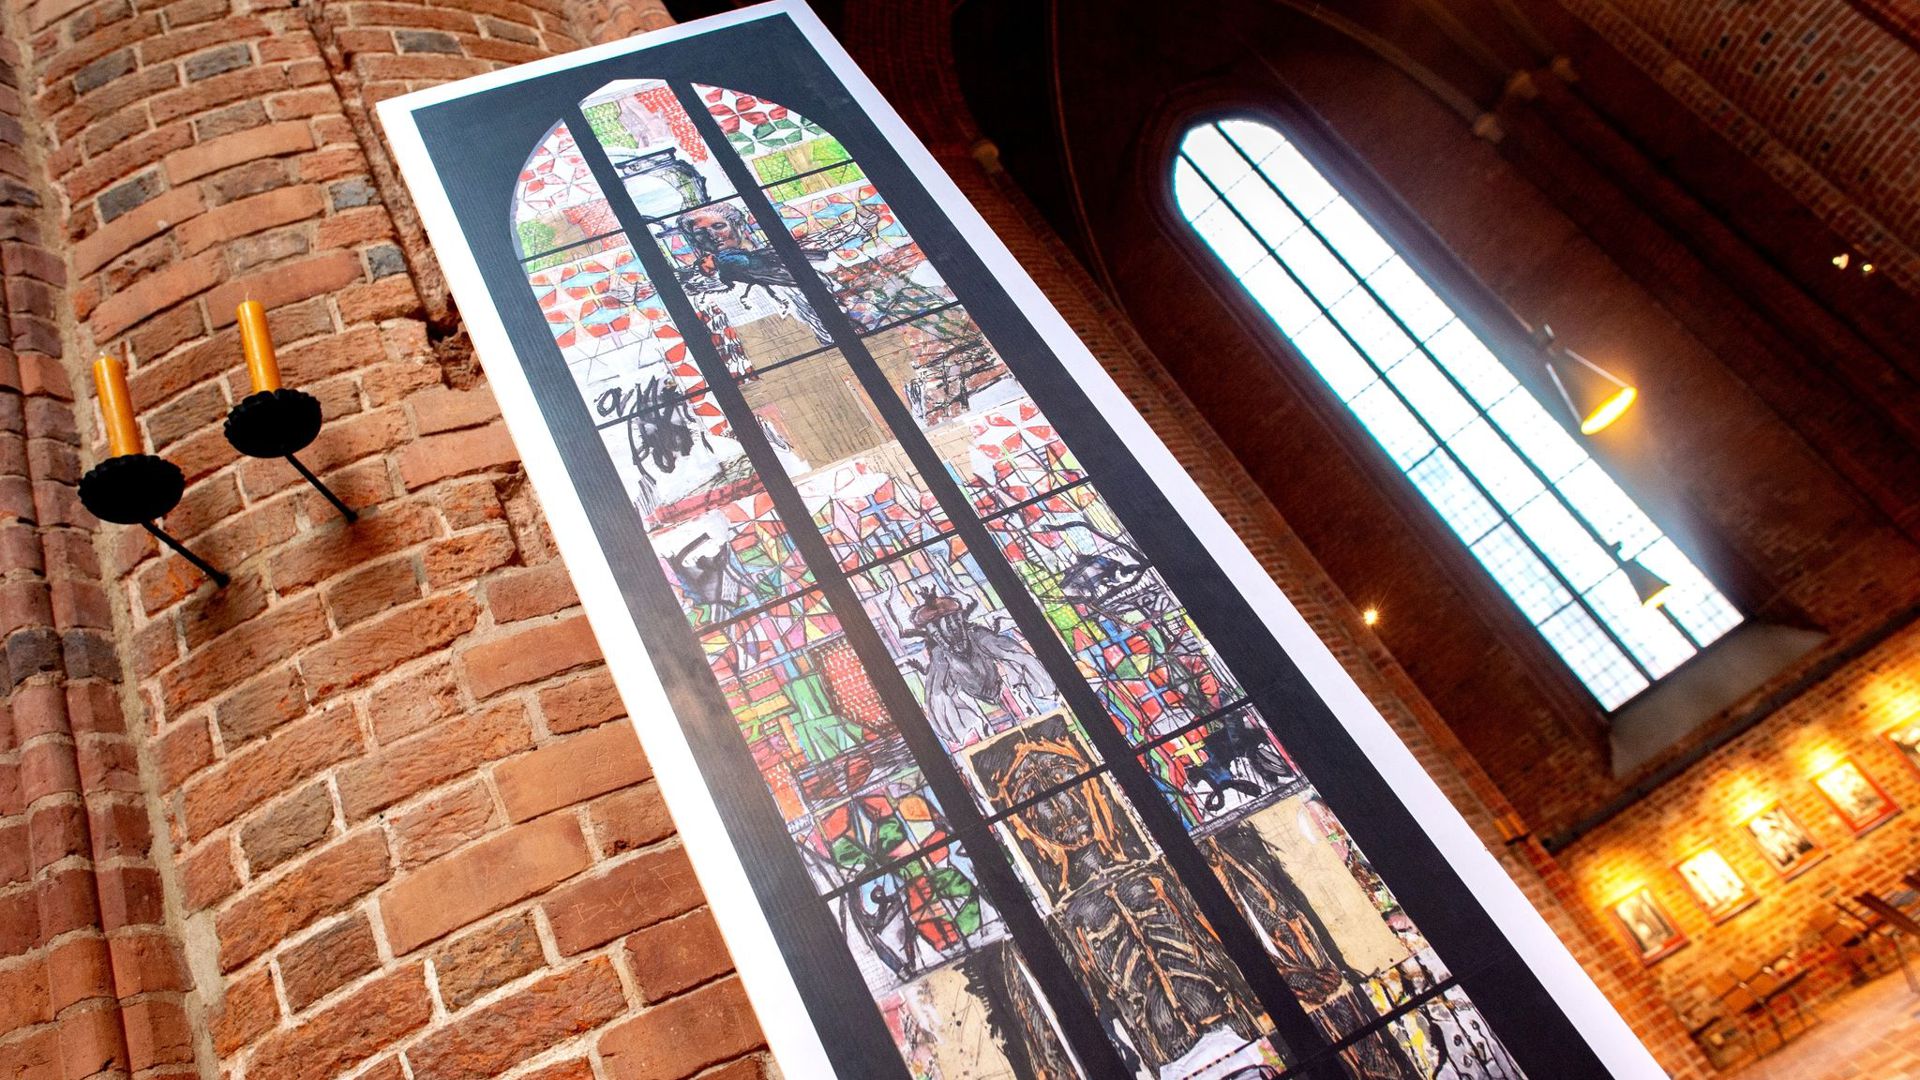 Ein Abbild des von Markus Lüpertz entworfenen Kirchenfensters zum Thema Reformation in der Marktkirche.